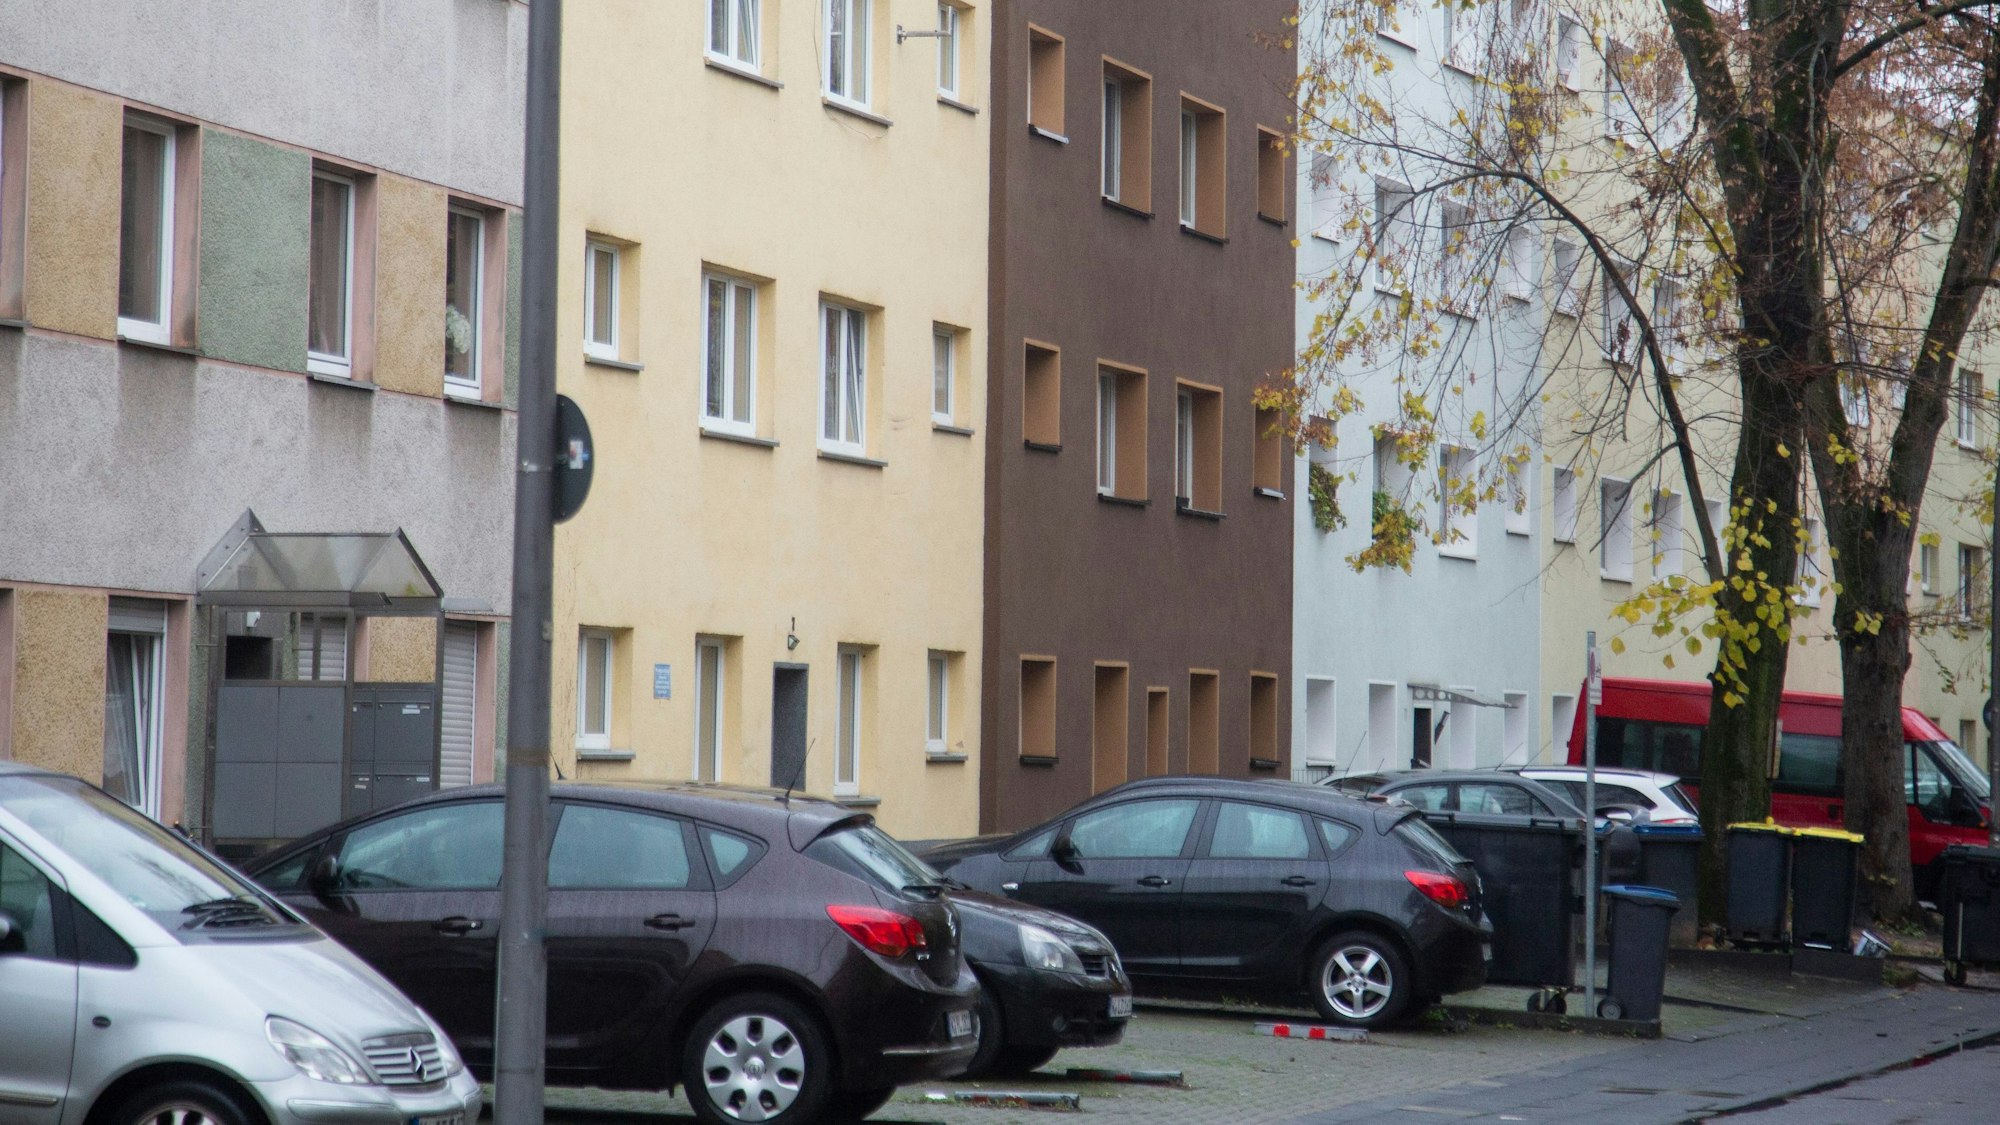 Vor einer Reihe mit Mehrfamilienhäusern sind Autos geparkt.